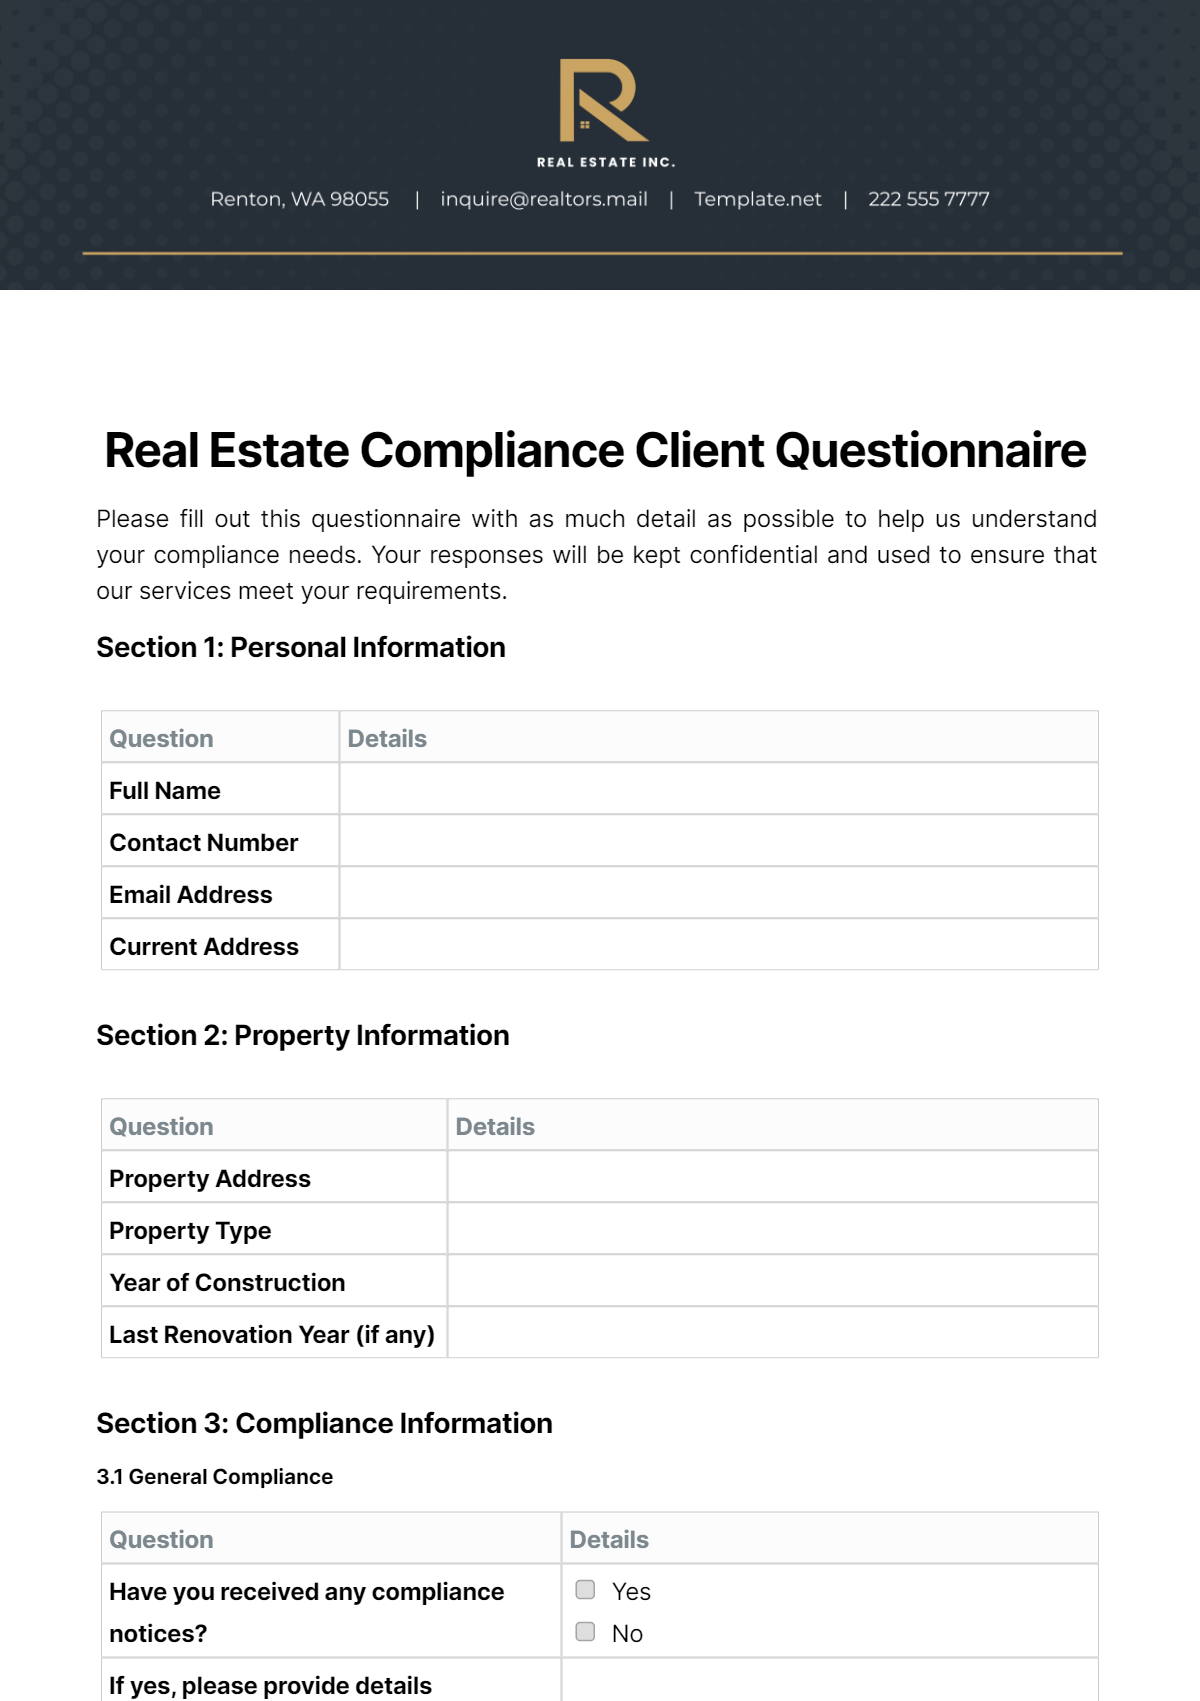 Real Estate Compliance Client Questionnaire Template